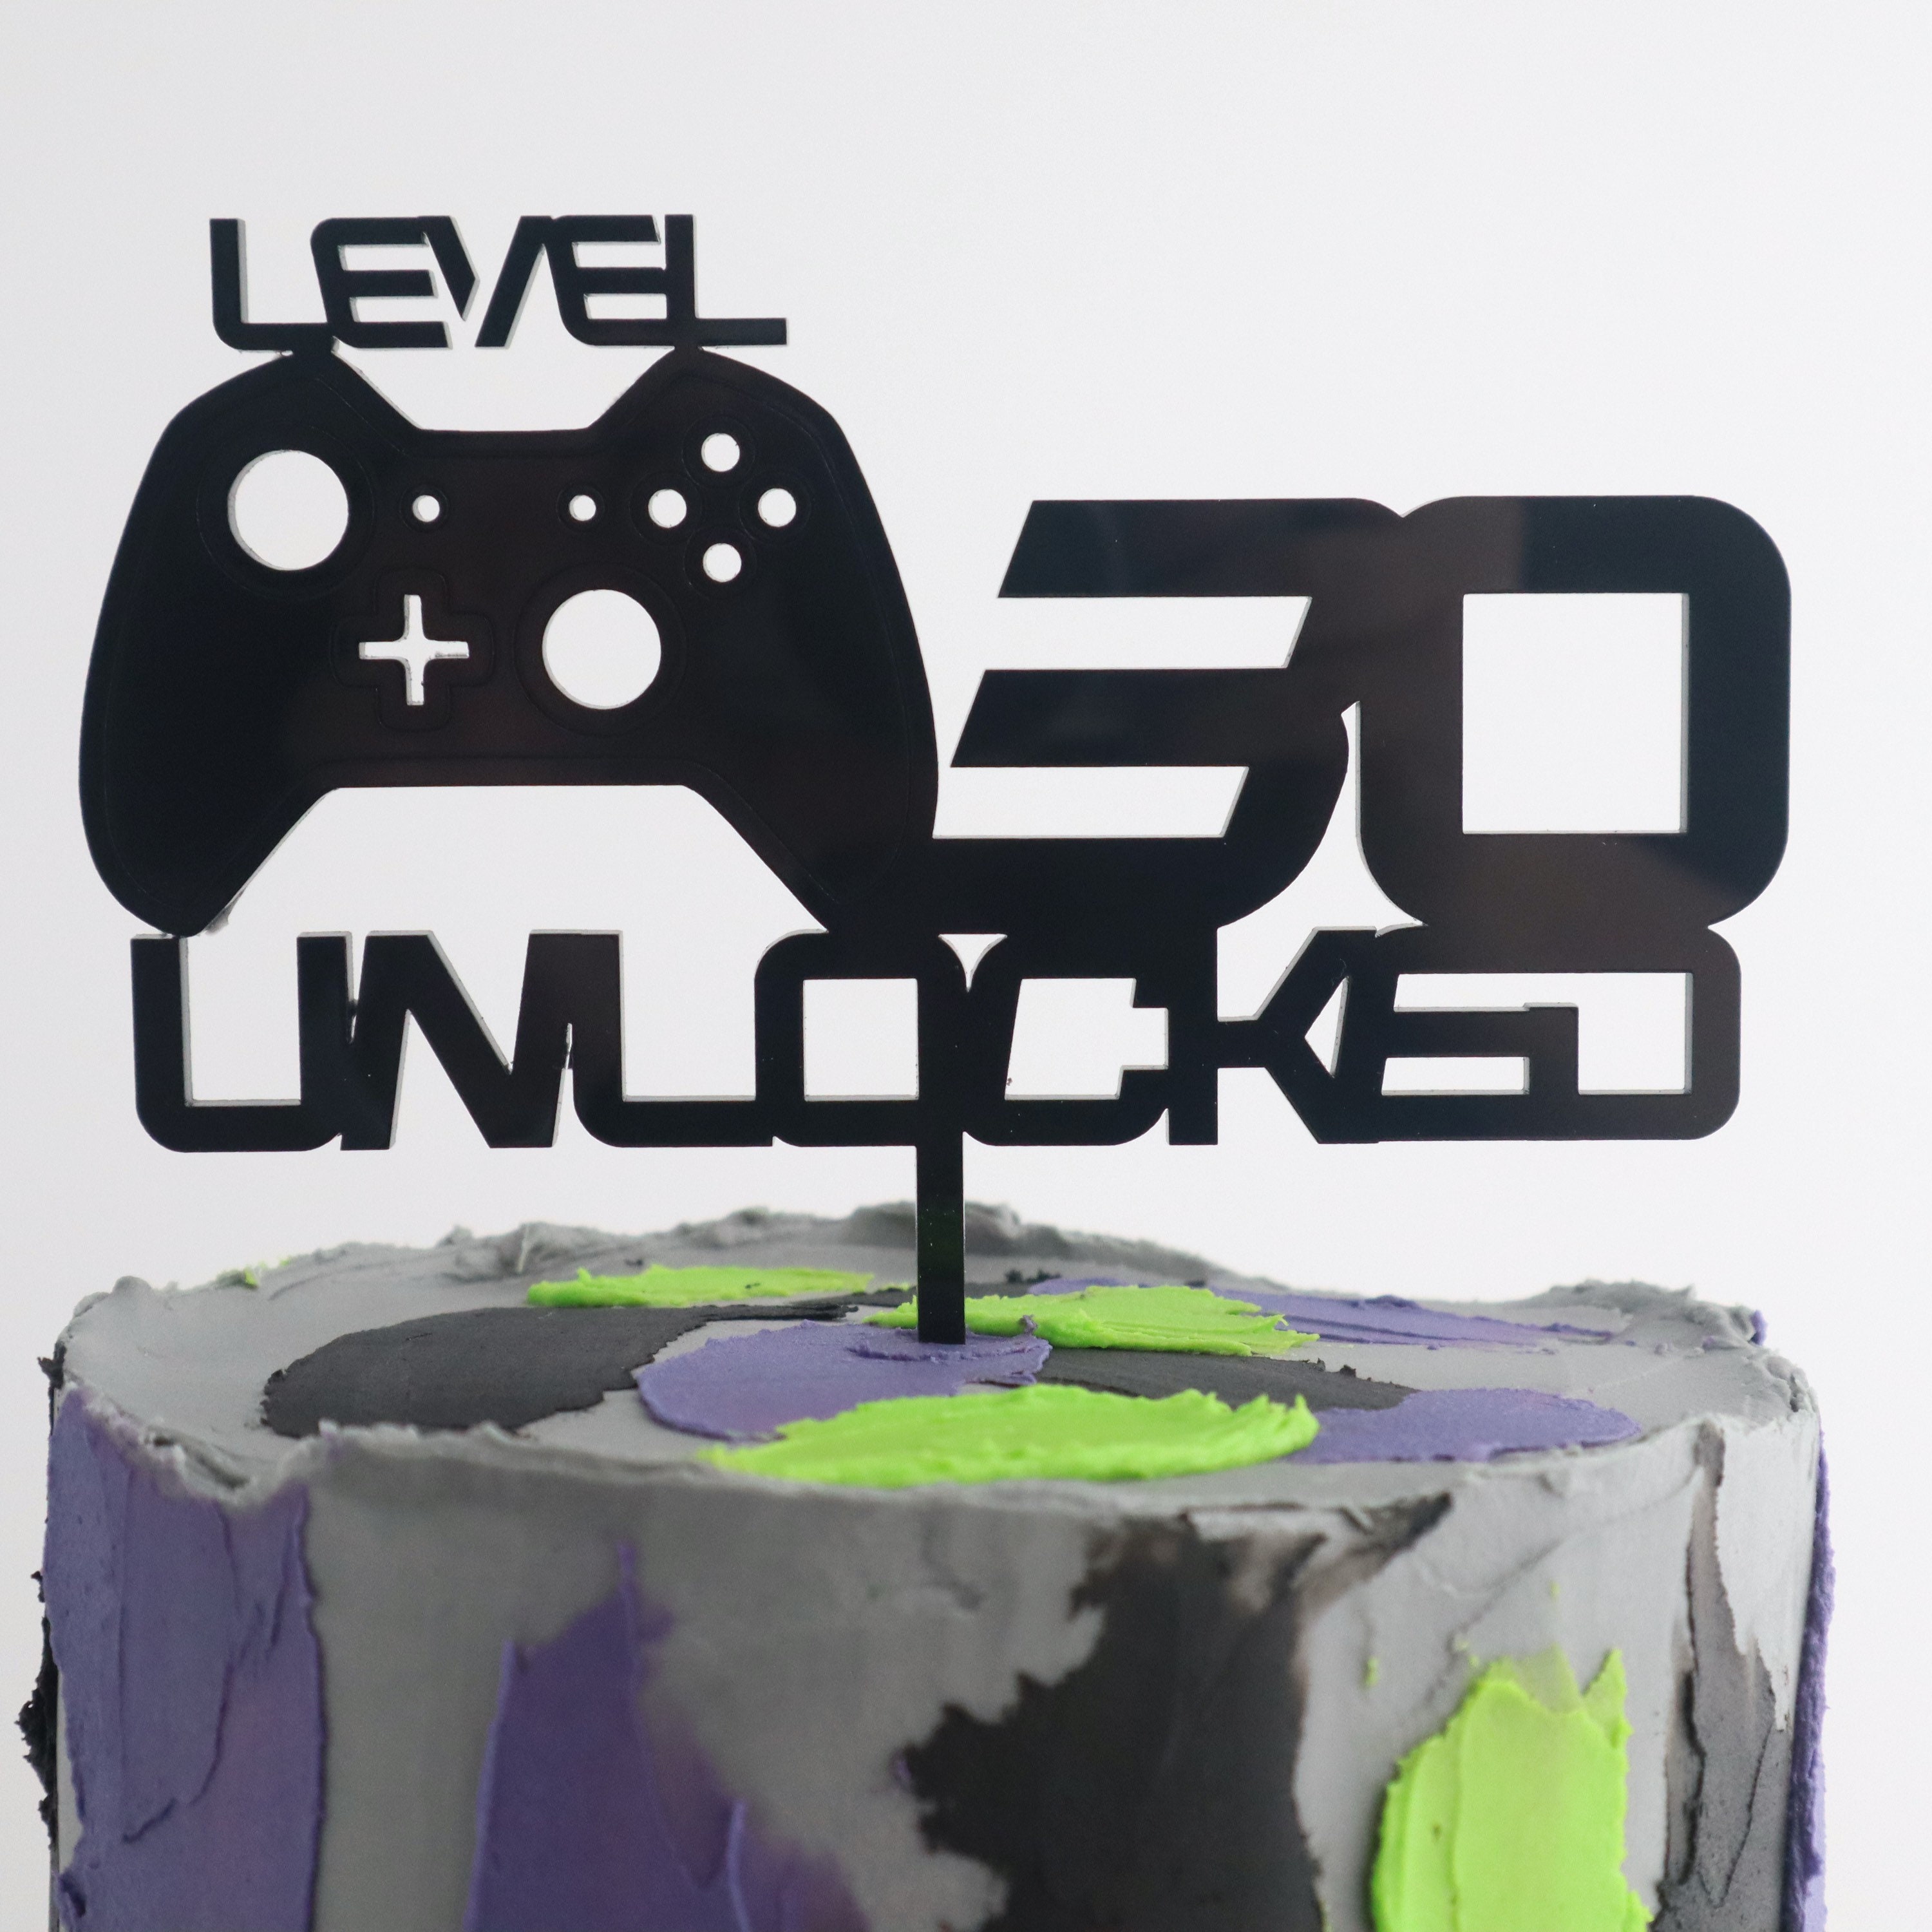 Video Game Cake Topper, Level Unlocked Topper Birthday, Gamer